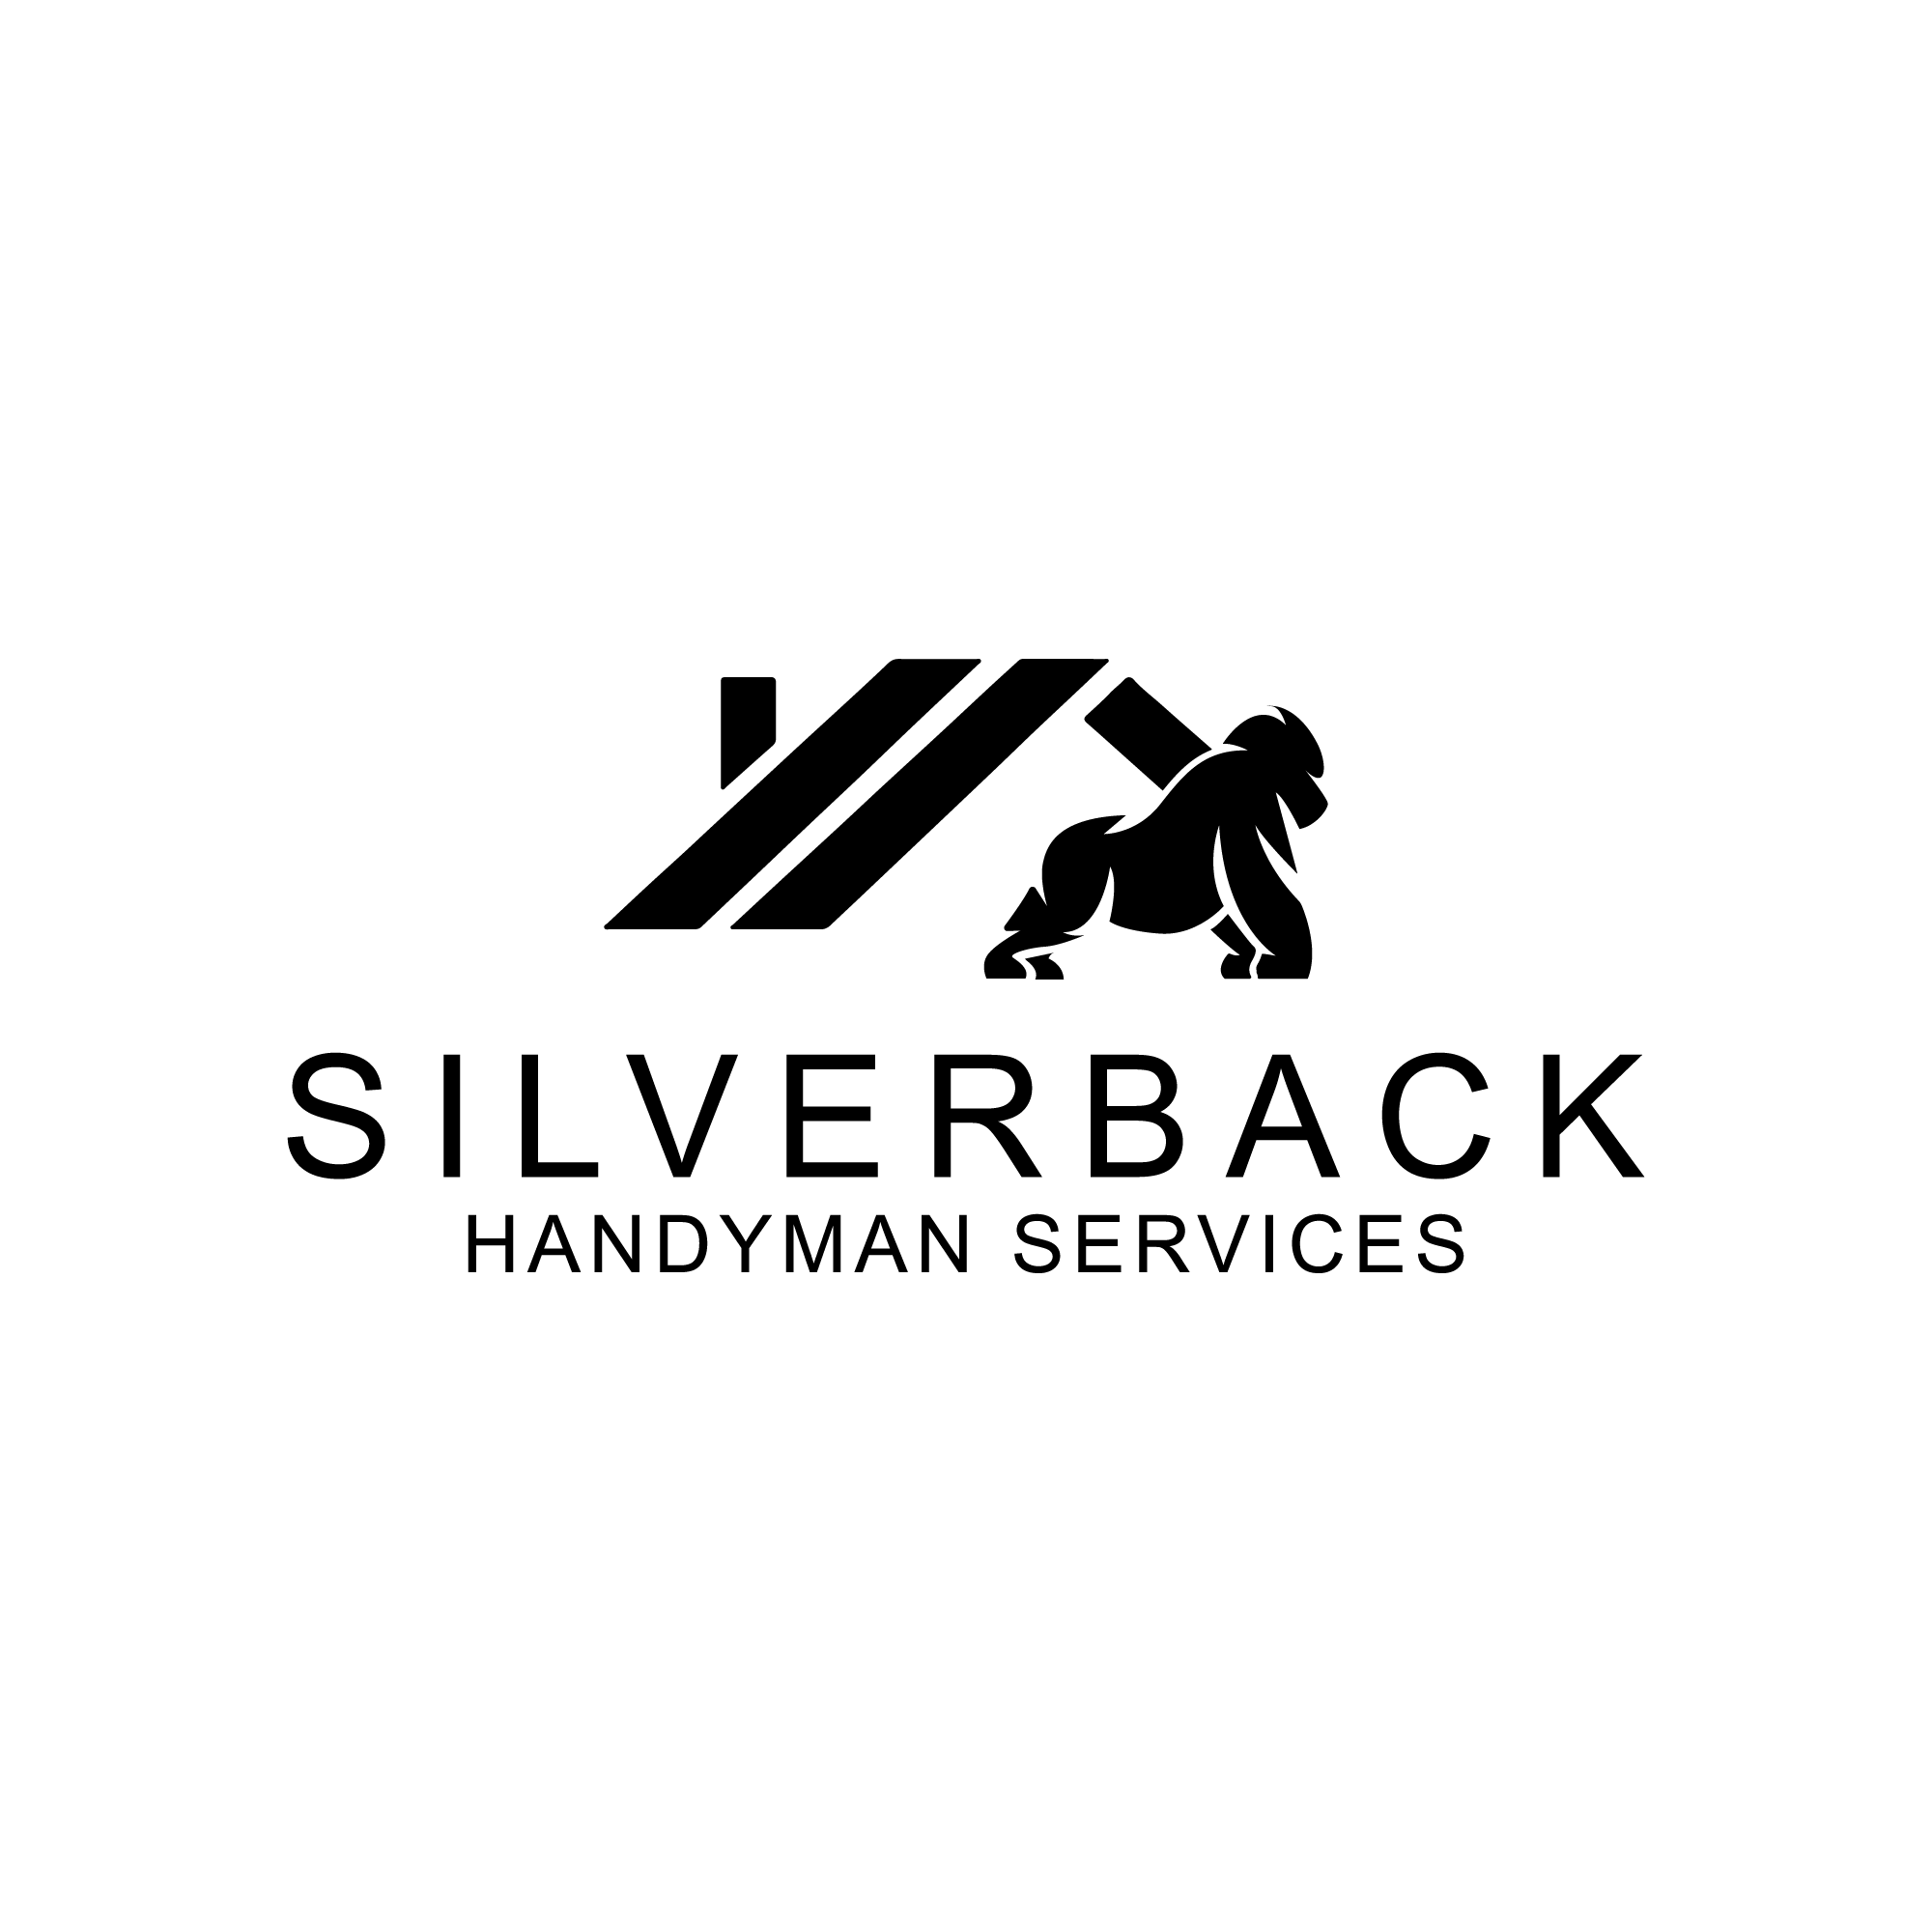 Silverback Handyman Service - Unlicensed Contractor Logo